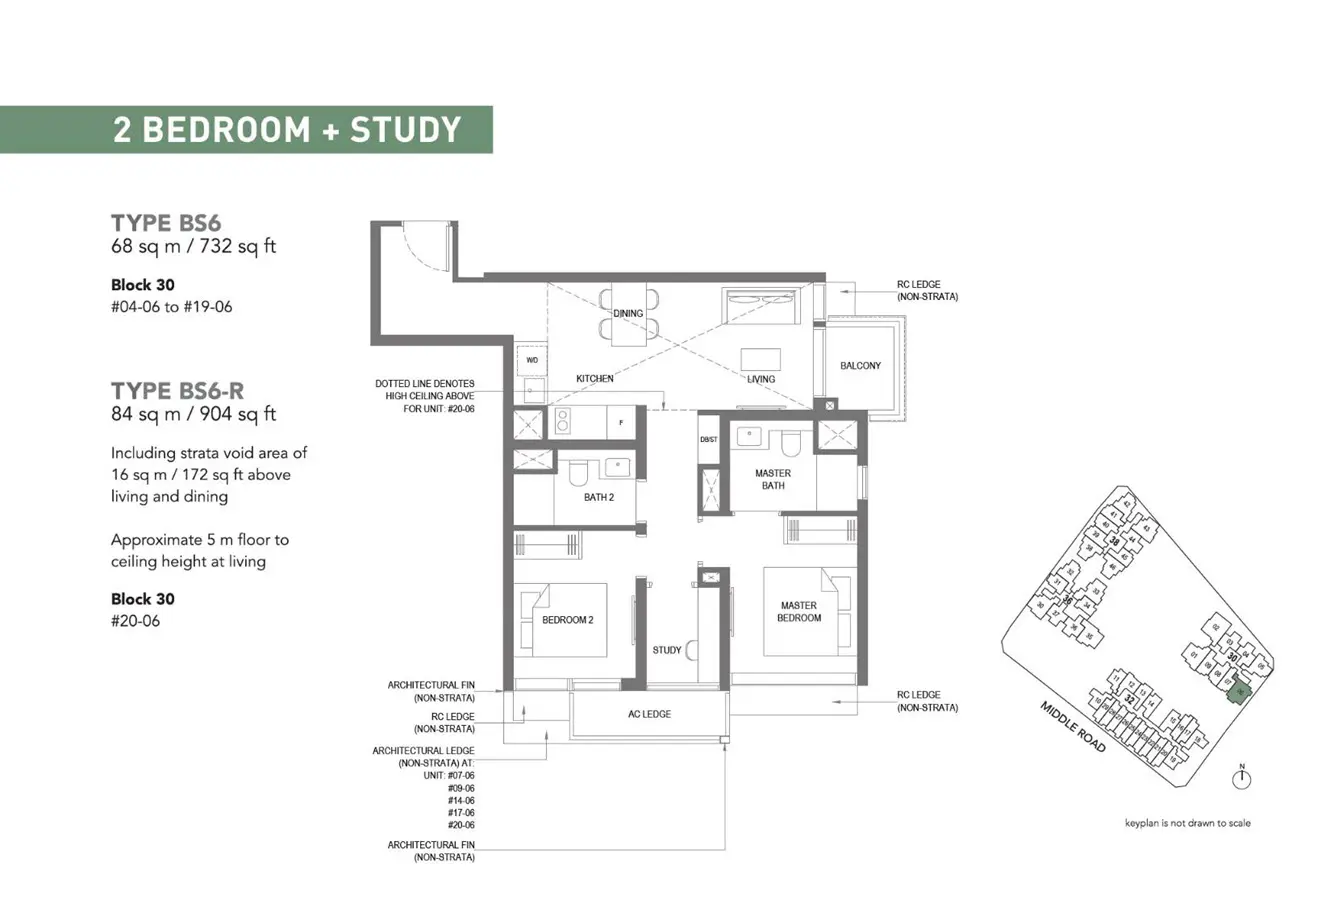 The M - Floor Plan - 2 Bedroom + Study BS6, BS6-R